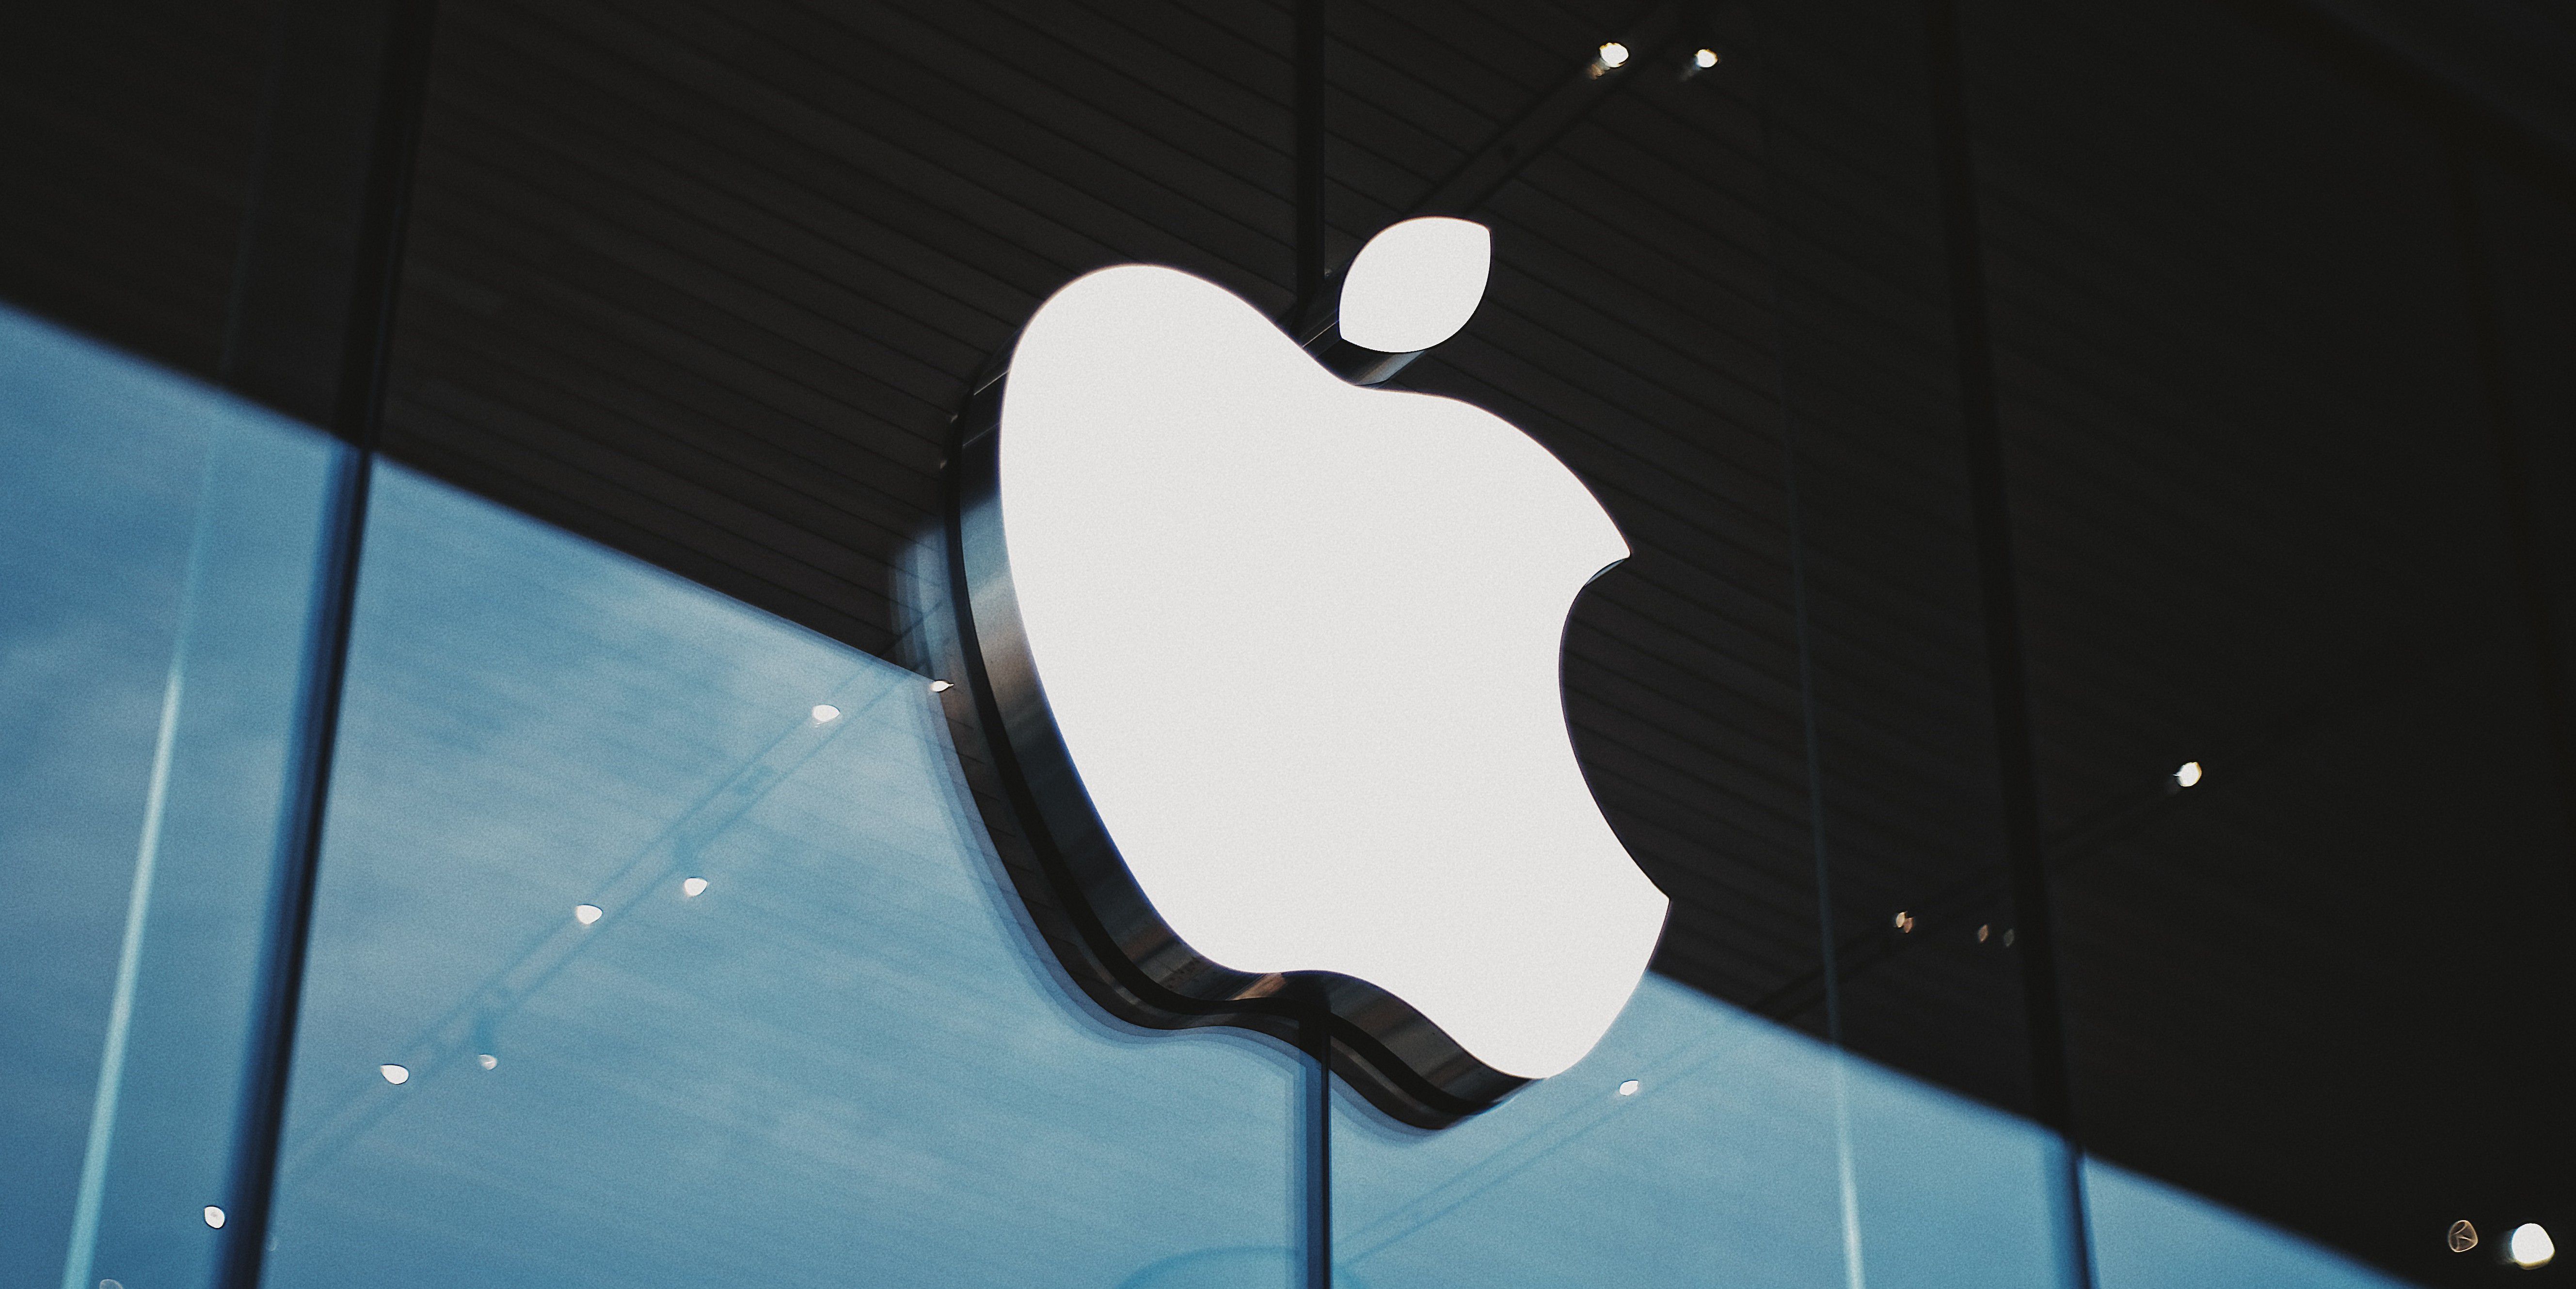 Acquistato iPhone e Mac e abbonato ai servizi: Apple dichiara ricavi record nel secondo trimestre